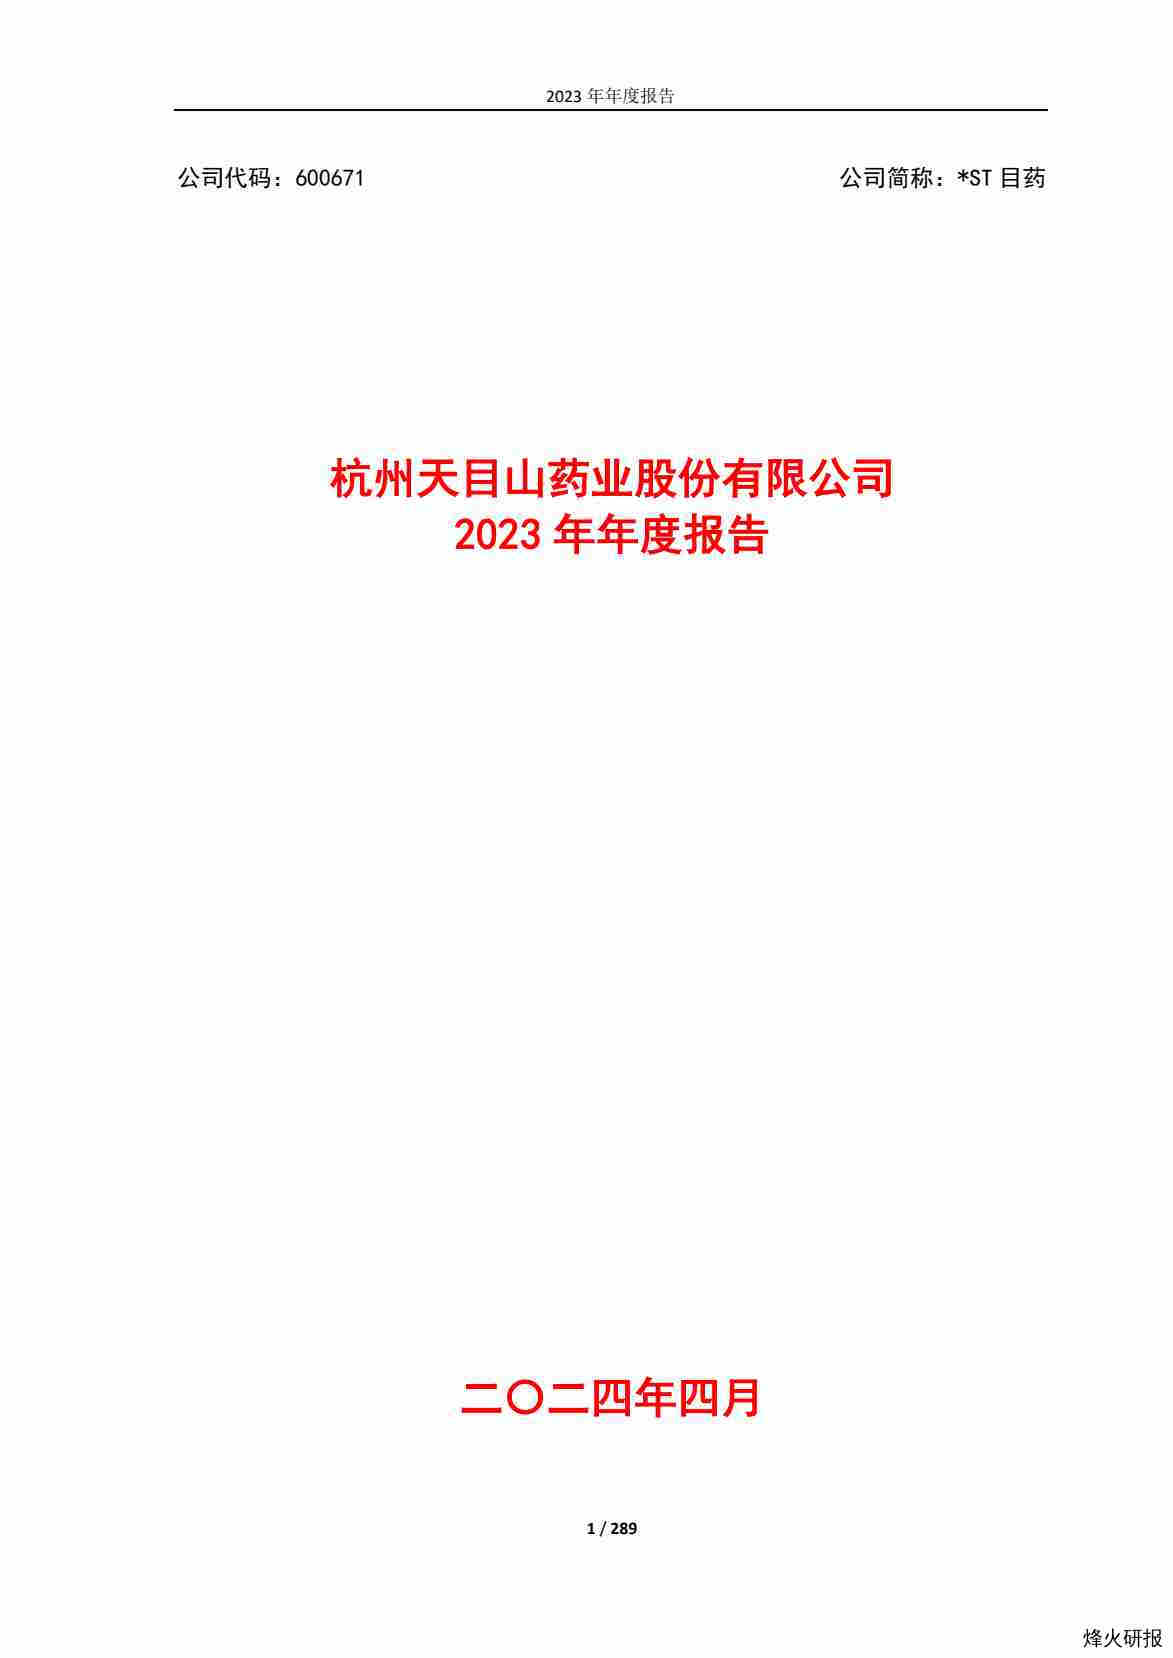 【财报】*ST目药：杭州天目山药业股份有限公司2023年年度报告.pdf-第一页